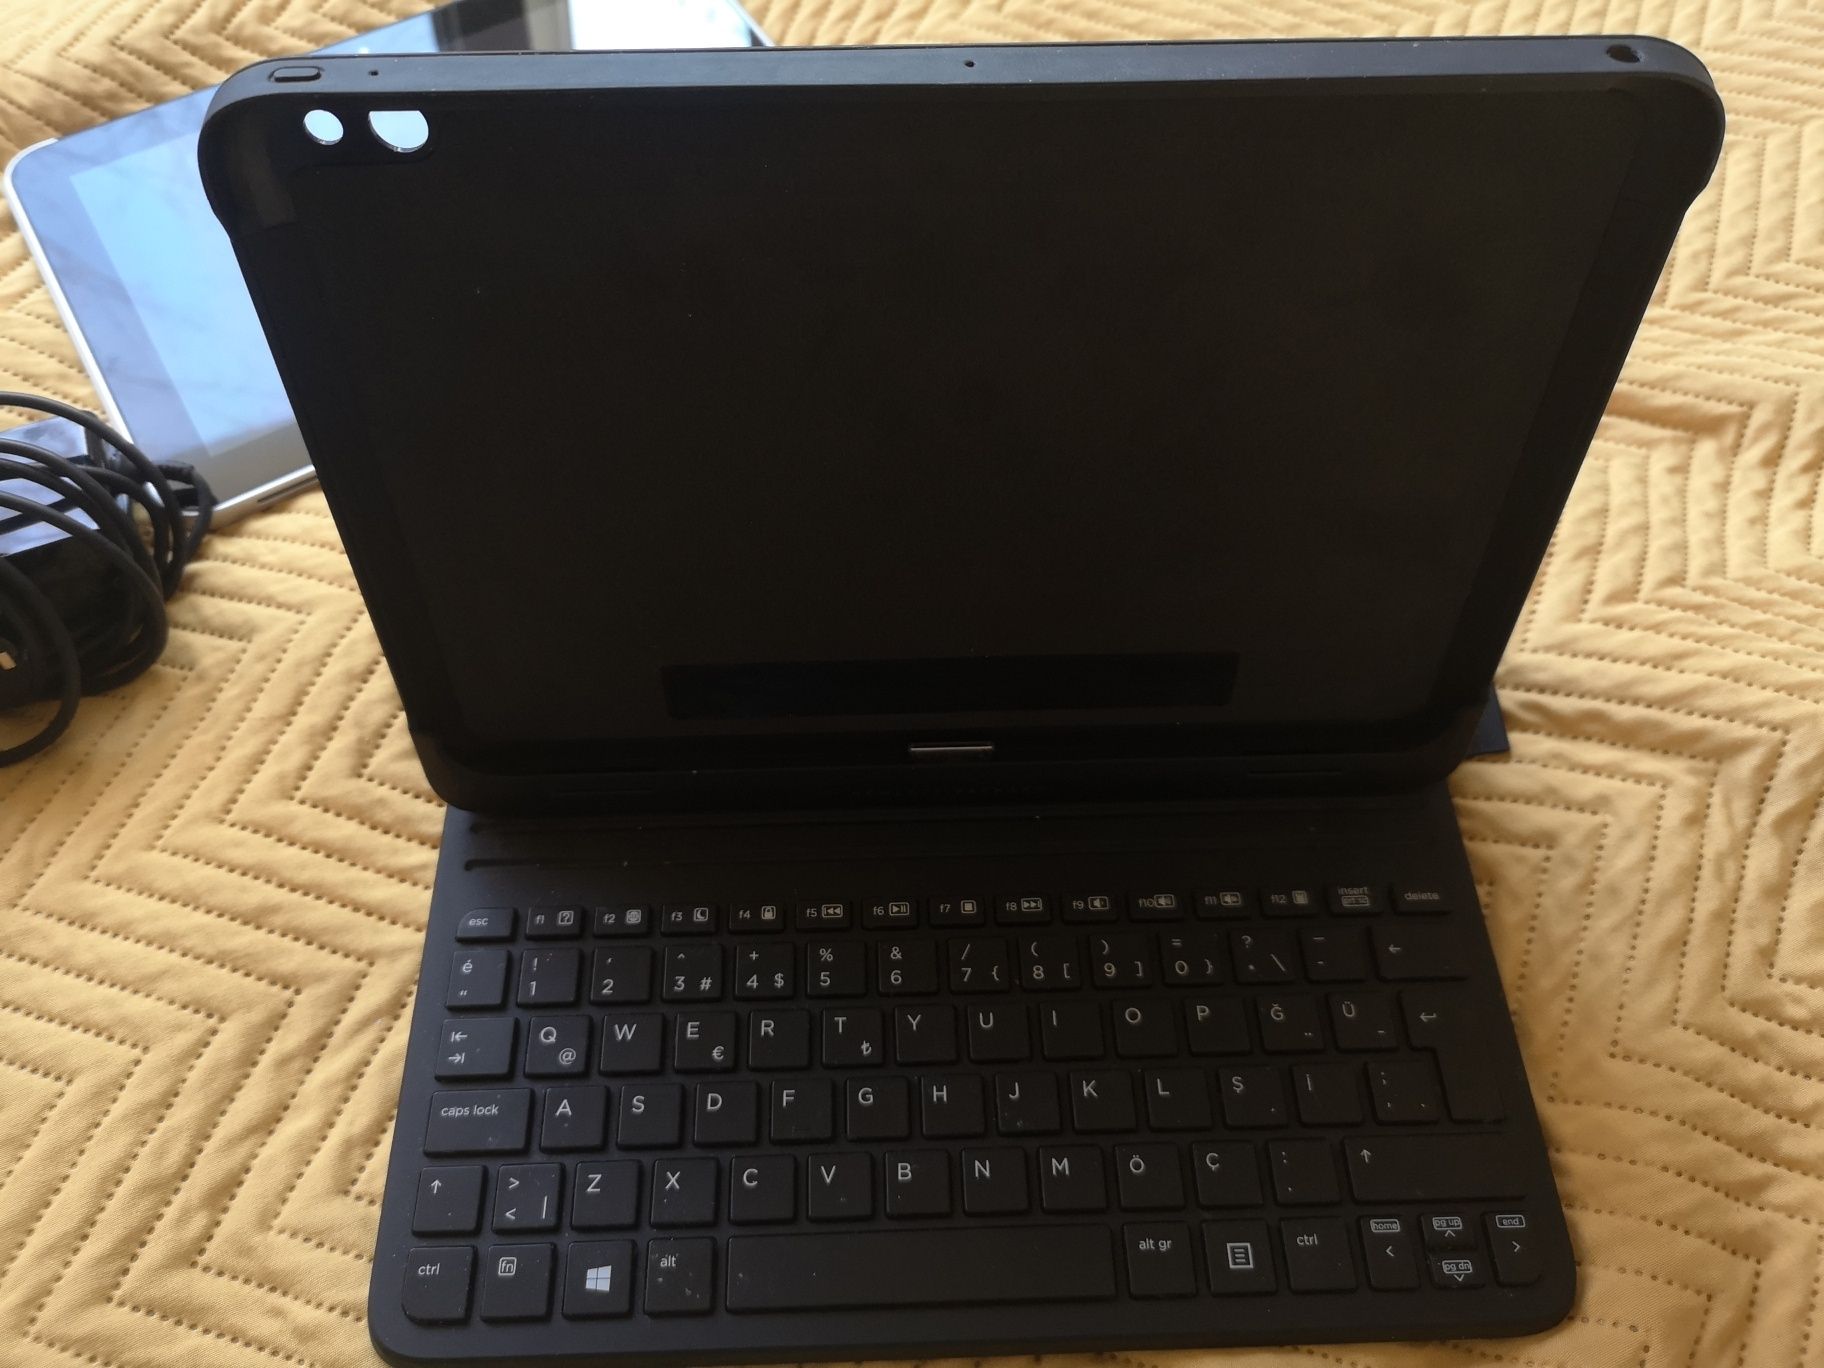 Tabletă HP ElitePad 1000 G2 (Windows 10)